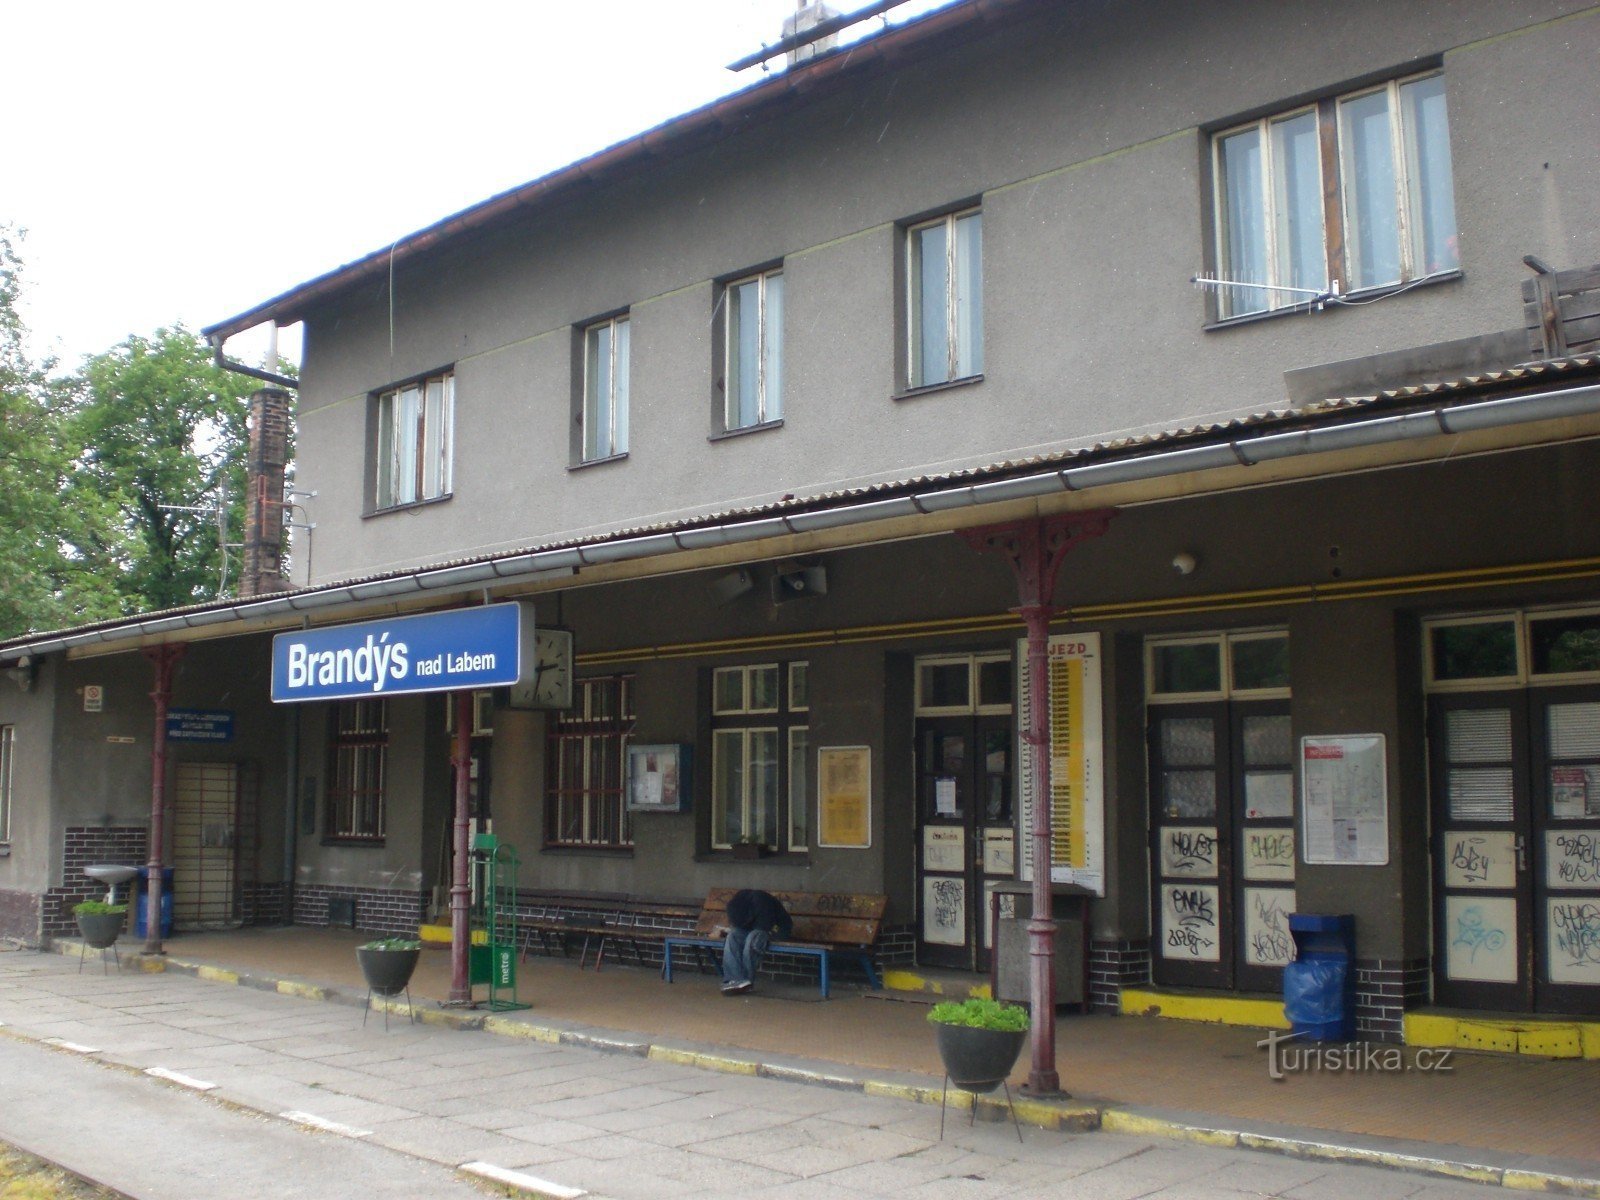 Brandýs nad Labem - залізнична станція